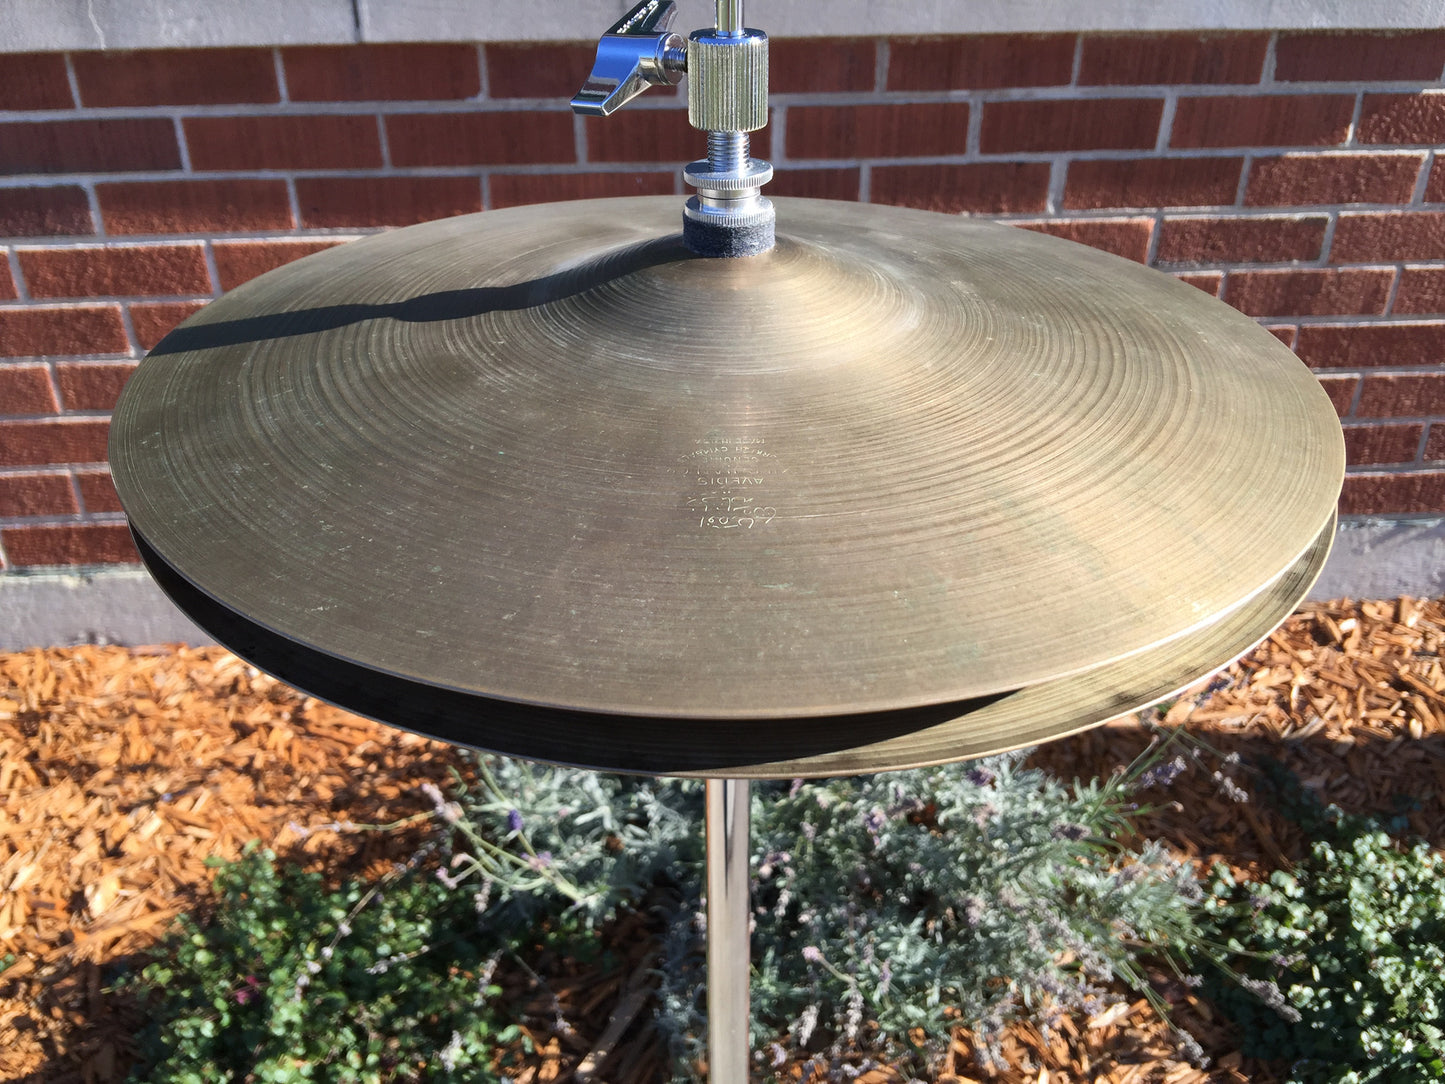 12" 1960's Zildjian A New Beat Hi-Hat Cymbal Pair 570g/688g - Inventory #249